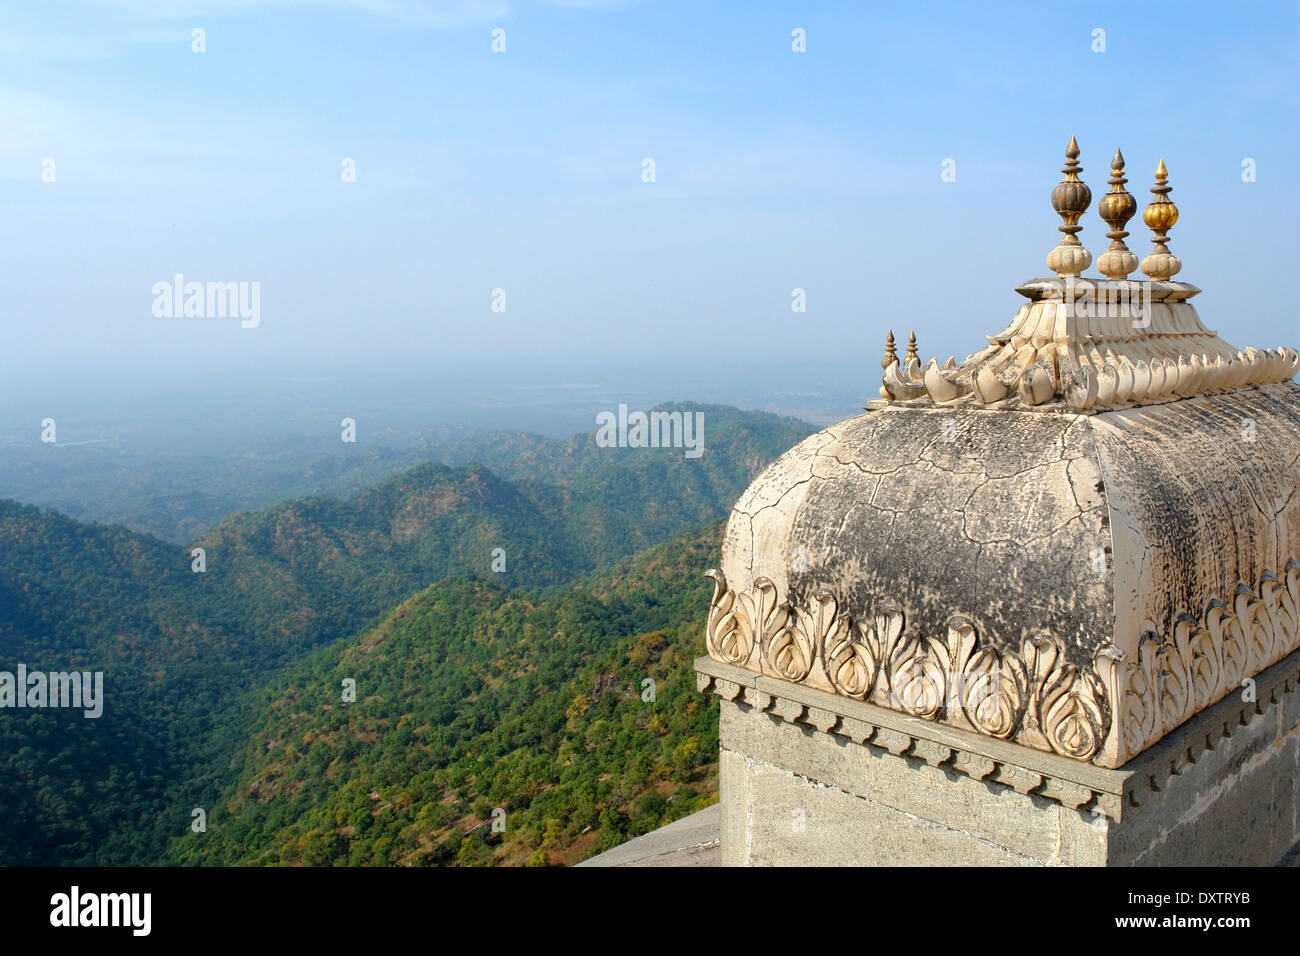 Paysage autour de Kumbhalgarh situé dans le Rajasthan, Inde Banque D'Images